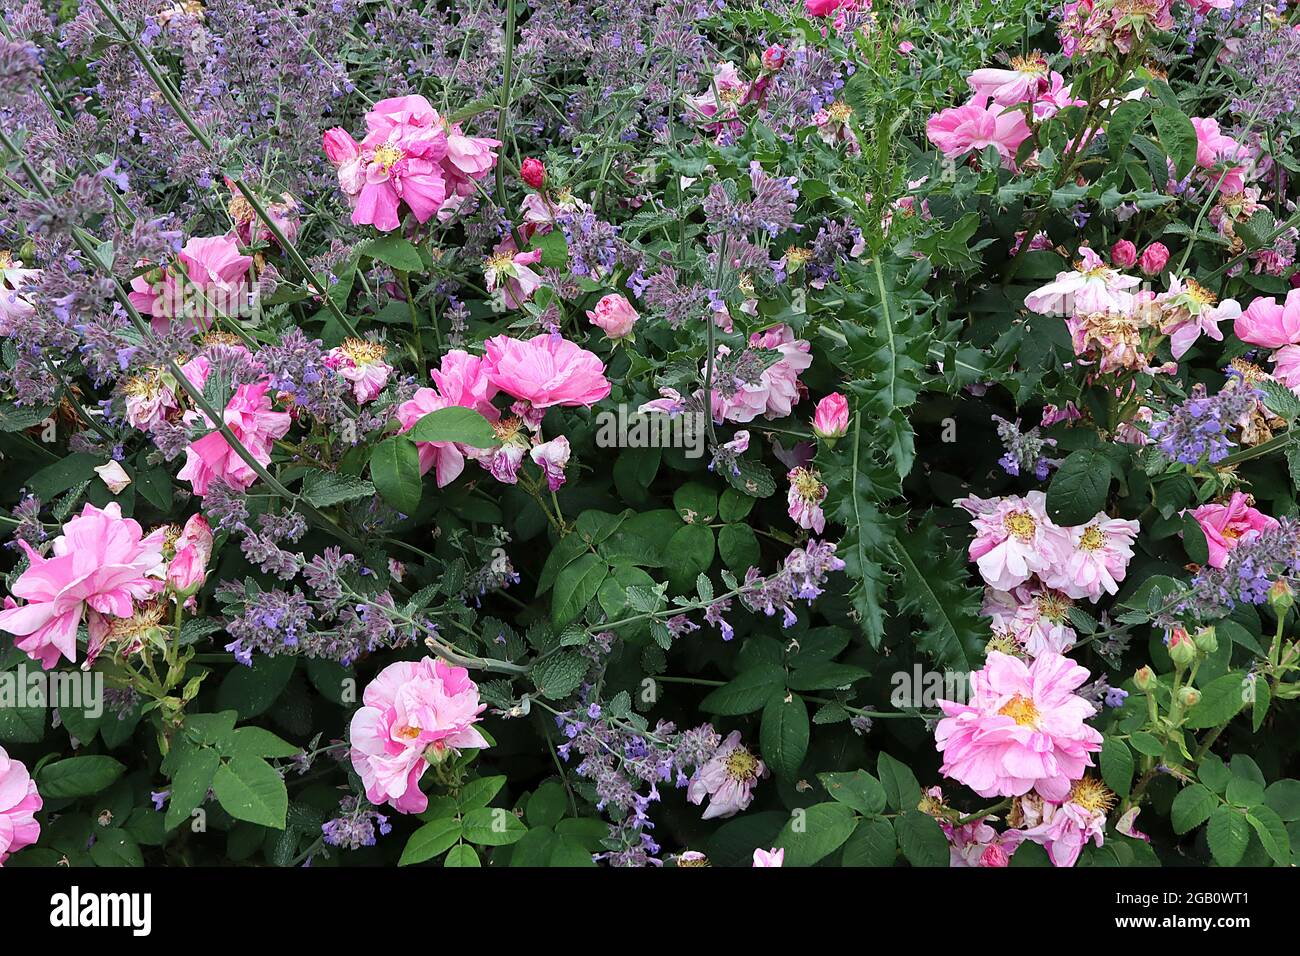 Rosa ‘Mundi’ Rosa gallica ‘Versicolor’ Rosa francese – semi-doppi fiori bianchi con striature rosa e rossa, giugno, Inghilterra, Regno Unito Foto Stock